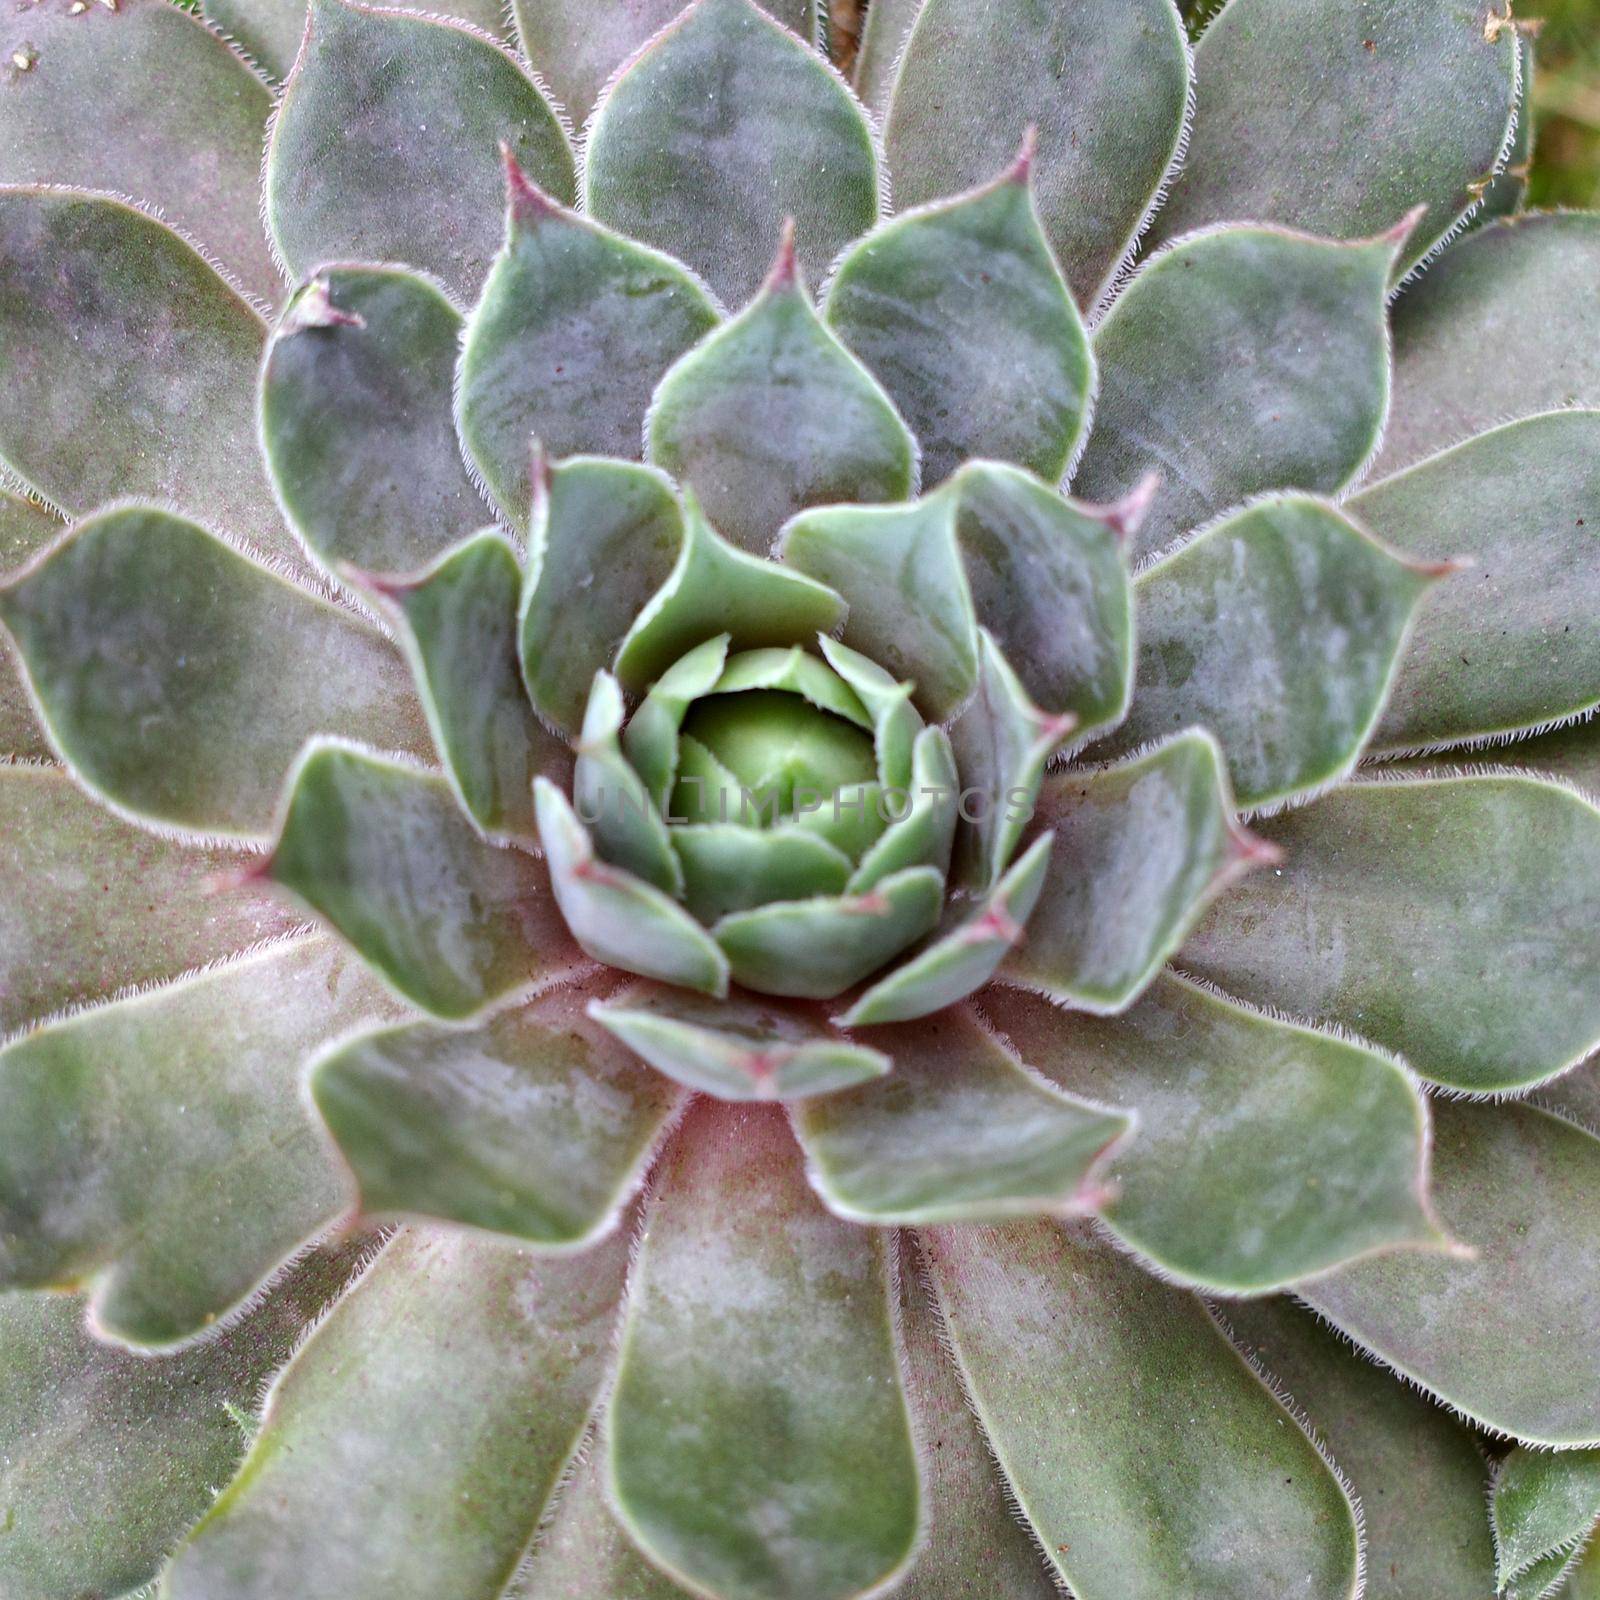 Close up of a houseleek variety. It's a Sempervivum tectorum plant, a succulent